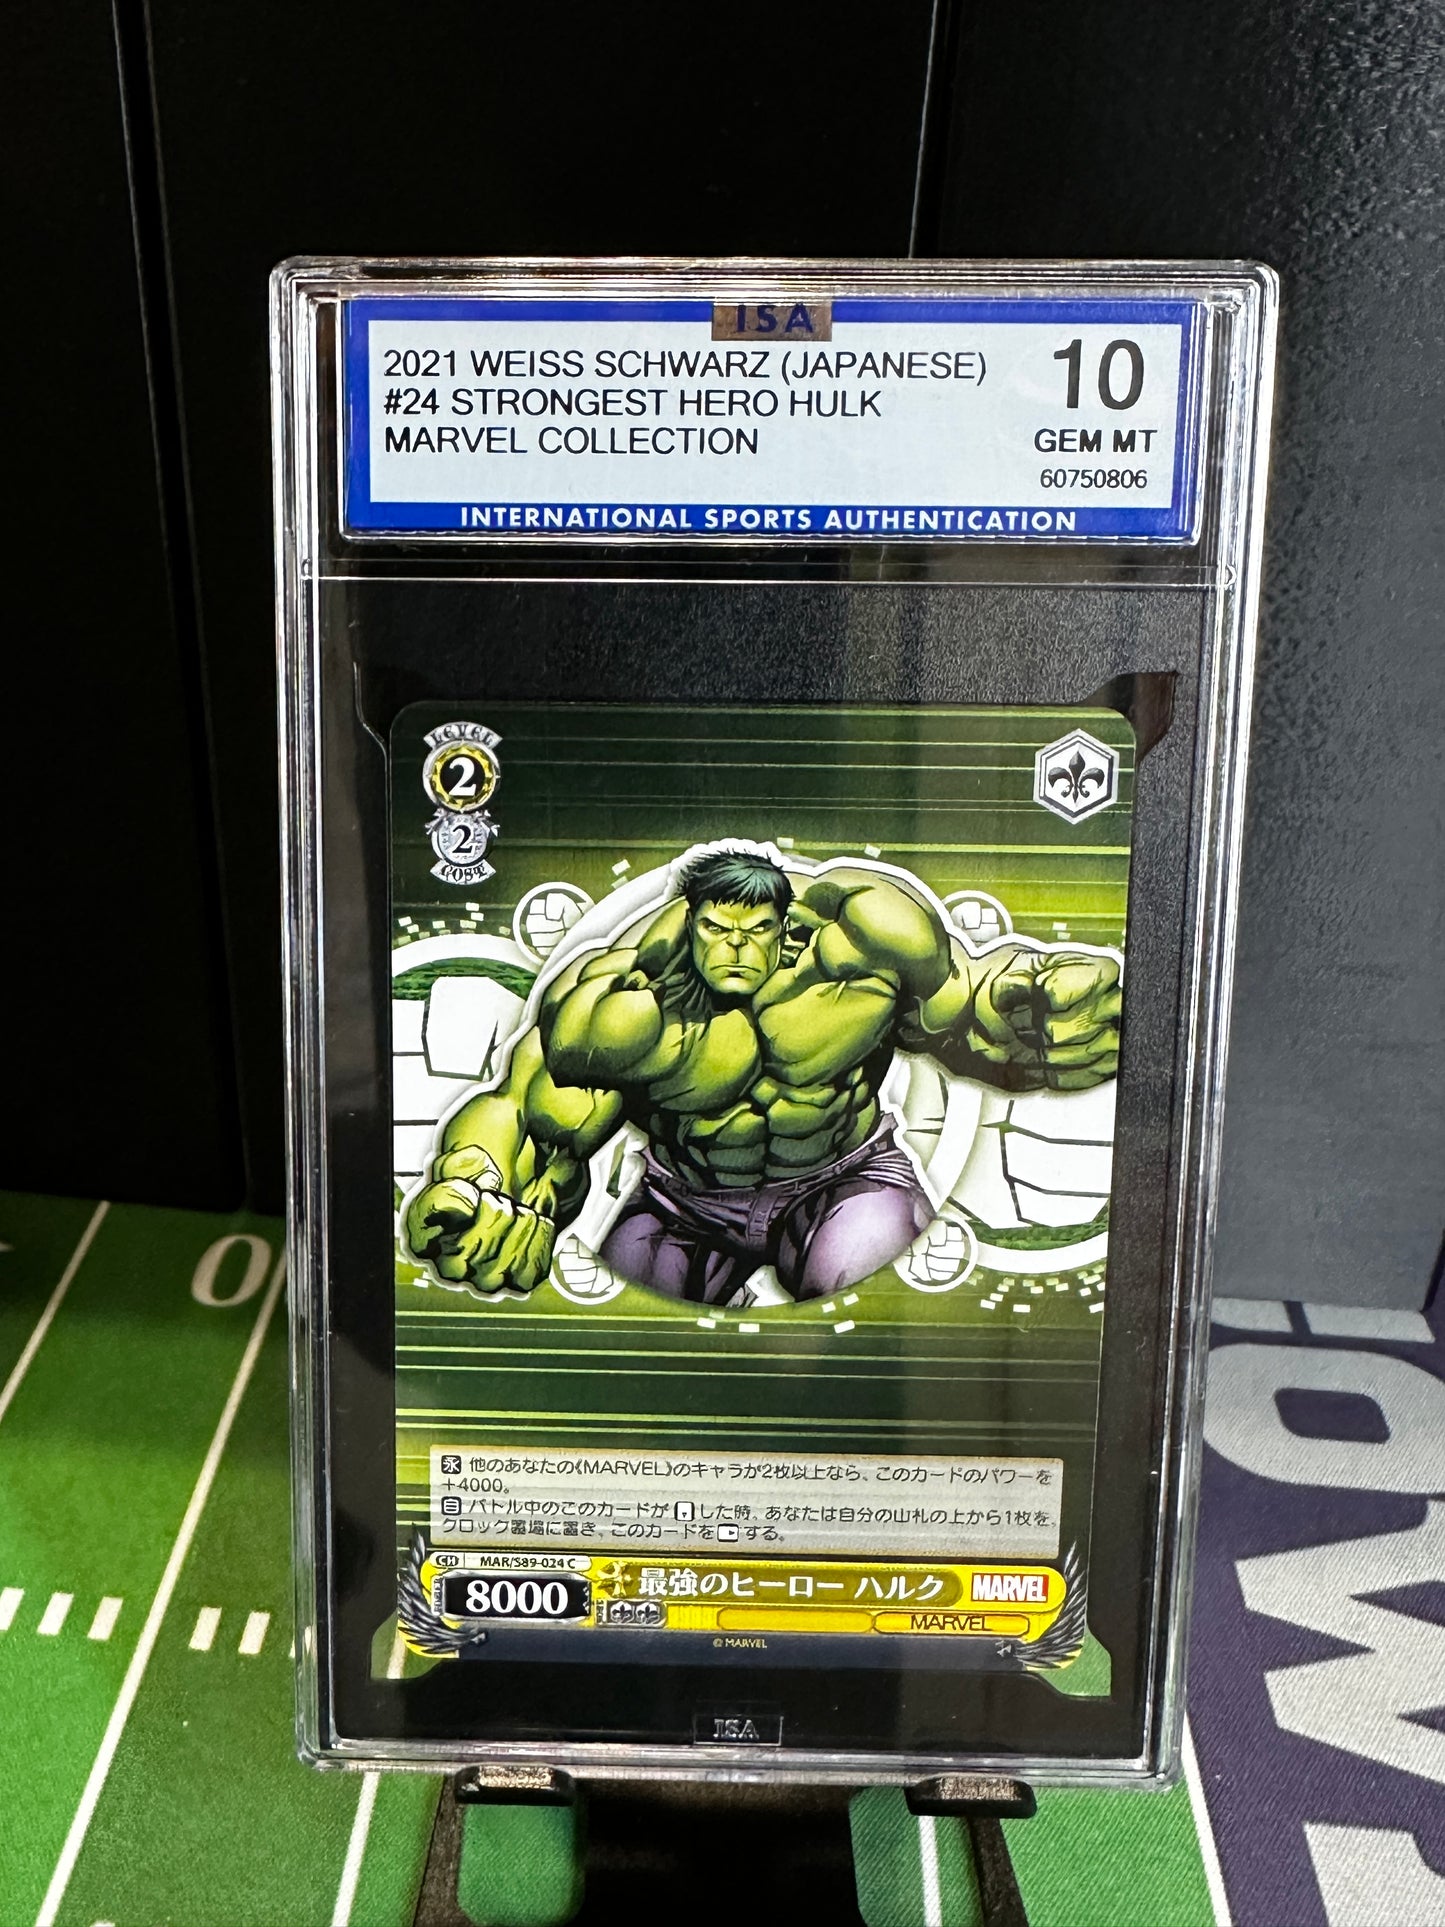 2021 Weiss Schwarz Marvel #24 Strongest Hero Hulk Gem Mt 10 Japanese RARE